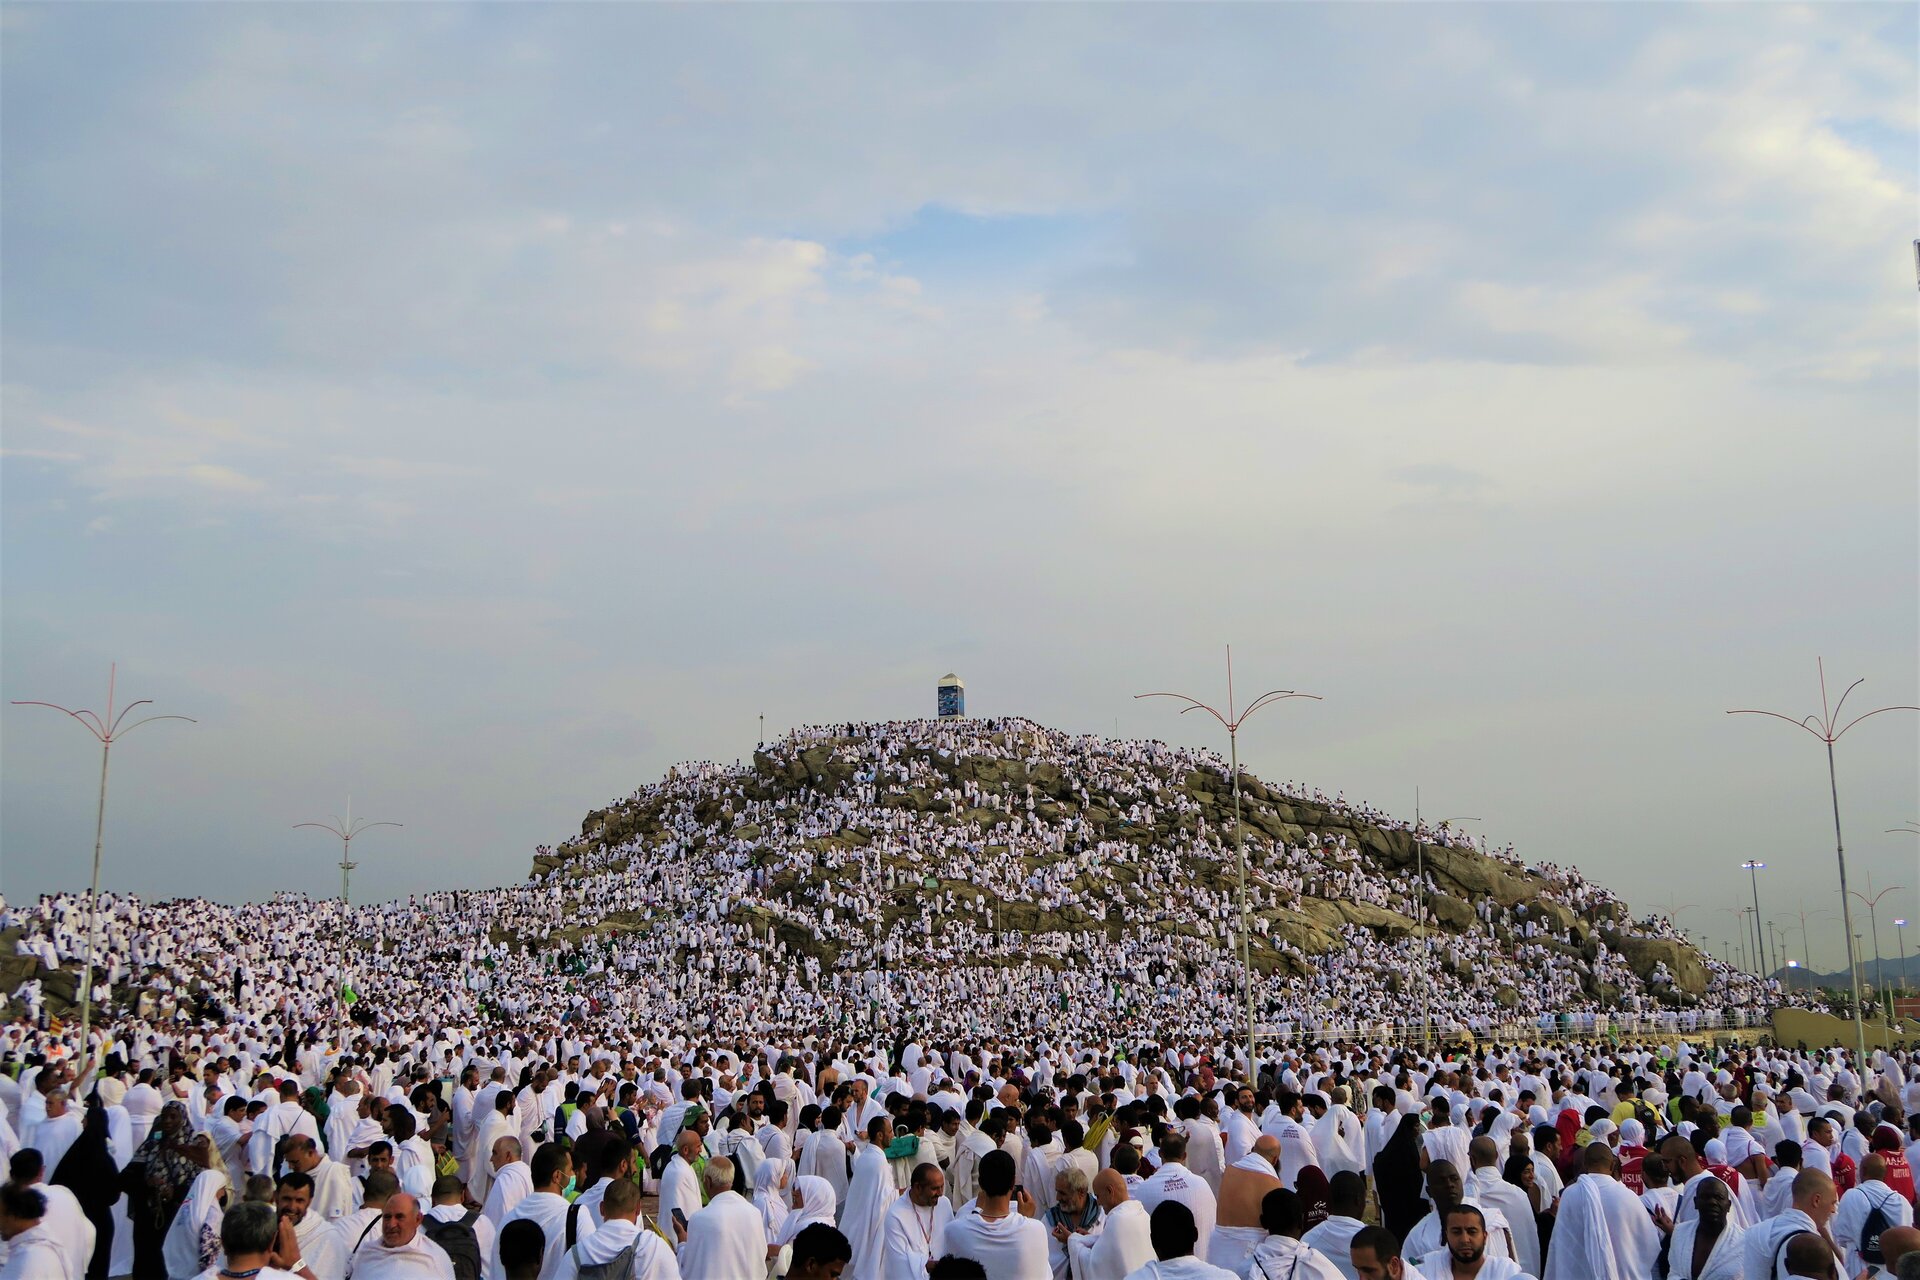 Zdjęcie przedstawia niewysokie wzgórze, na którym znajduje się tłum ludzi. Pielgrzymi ubrani są w białe szaty. Na szczycie wzgórza stoi obelisk.  